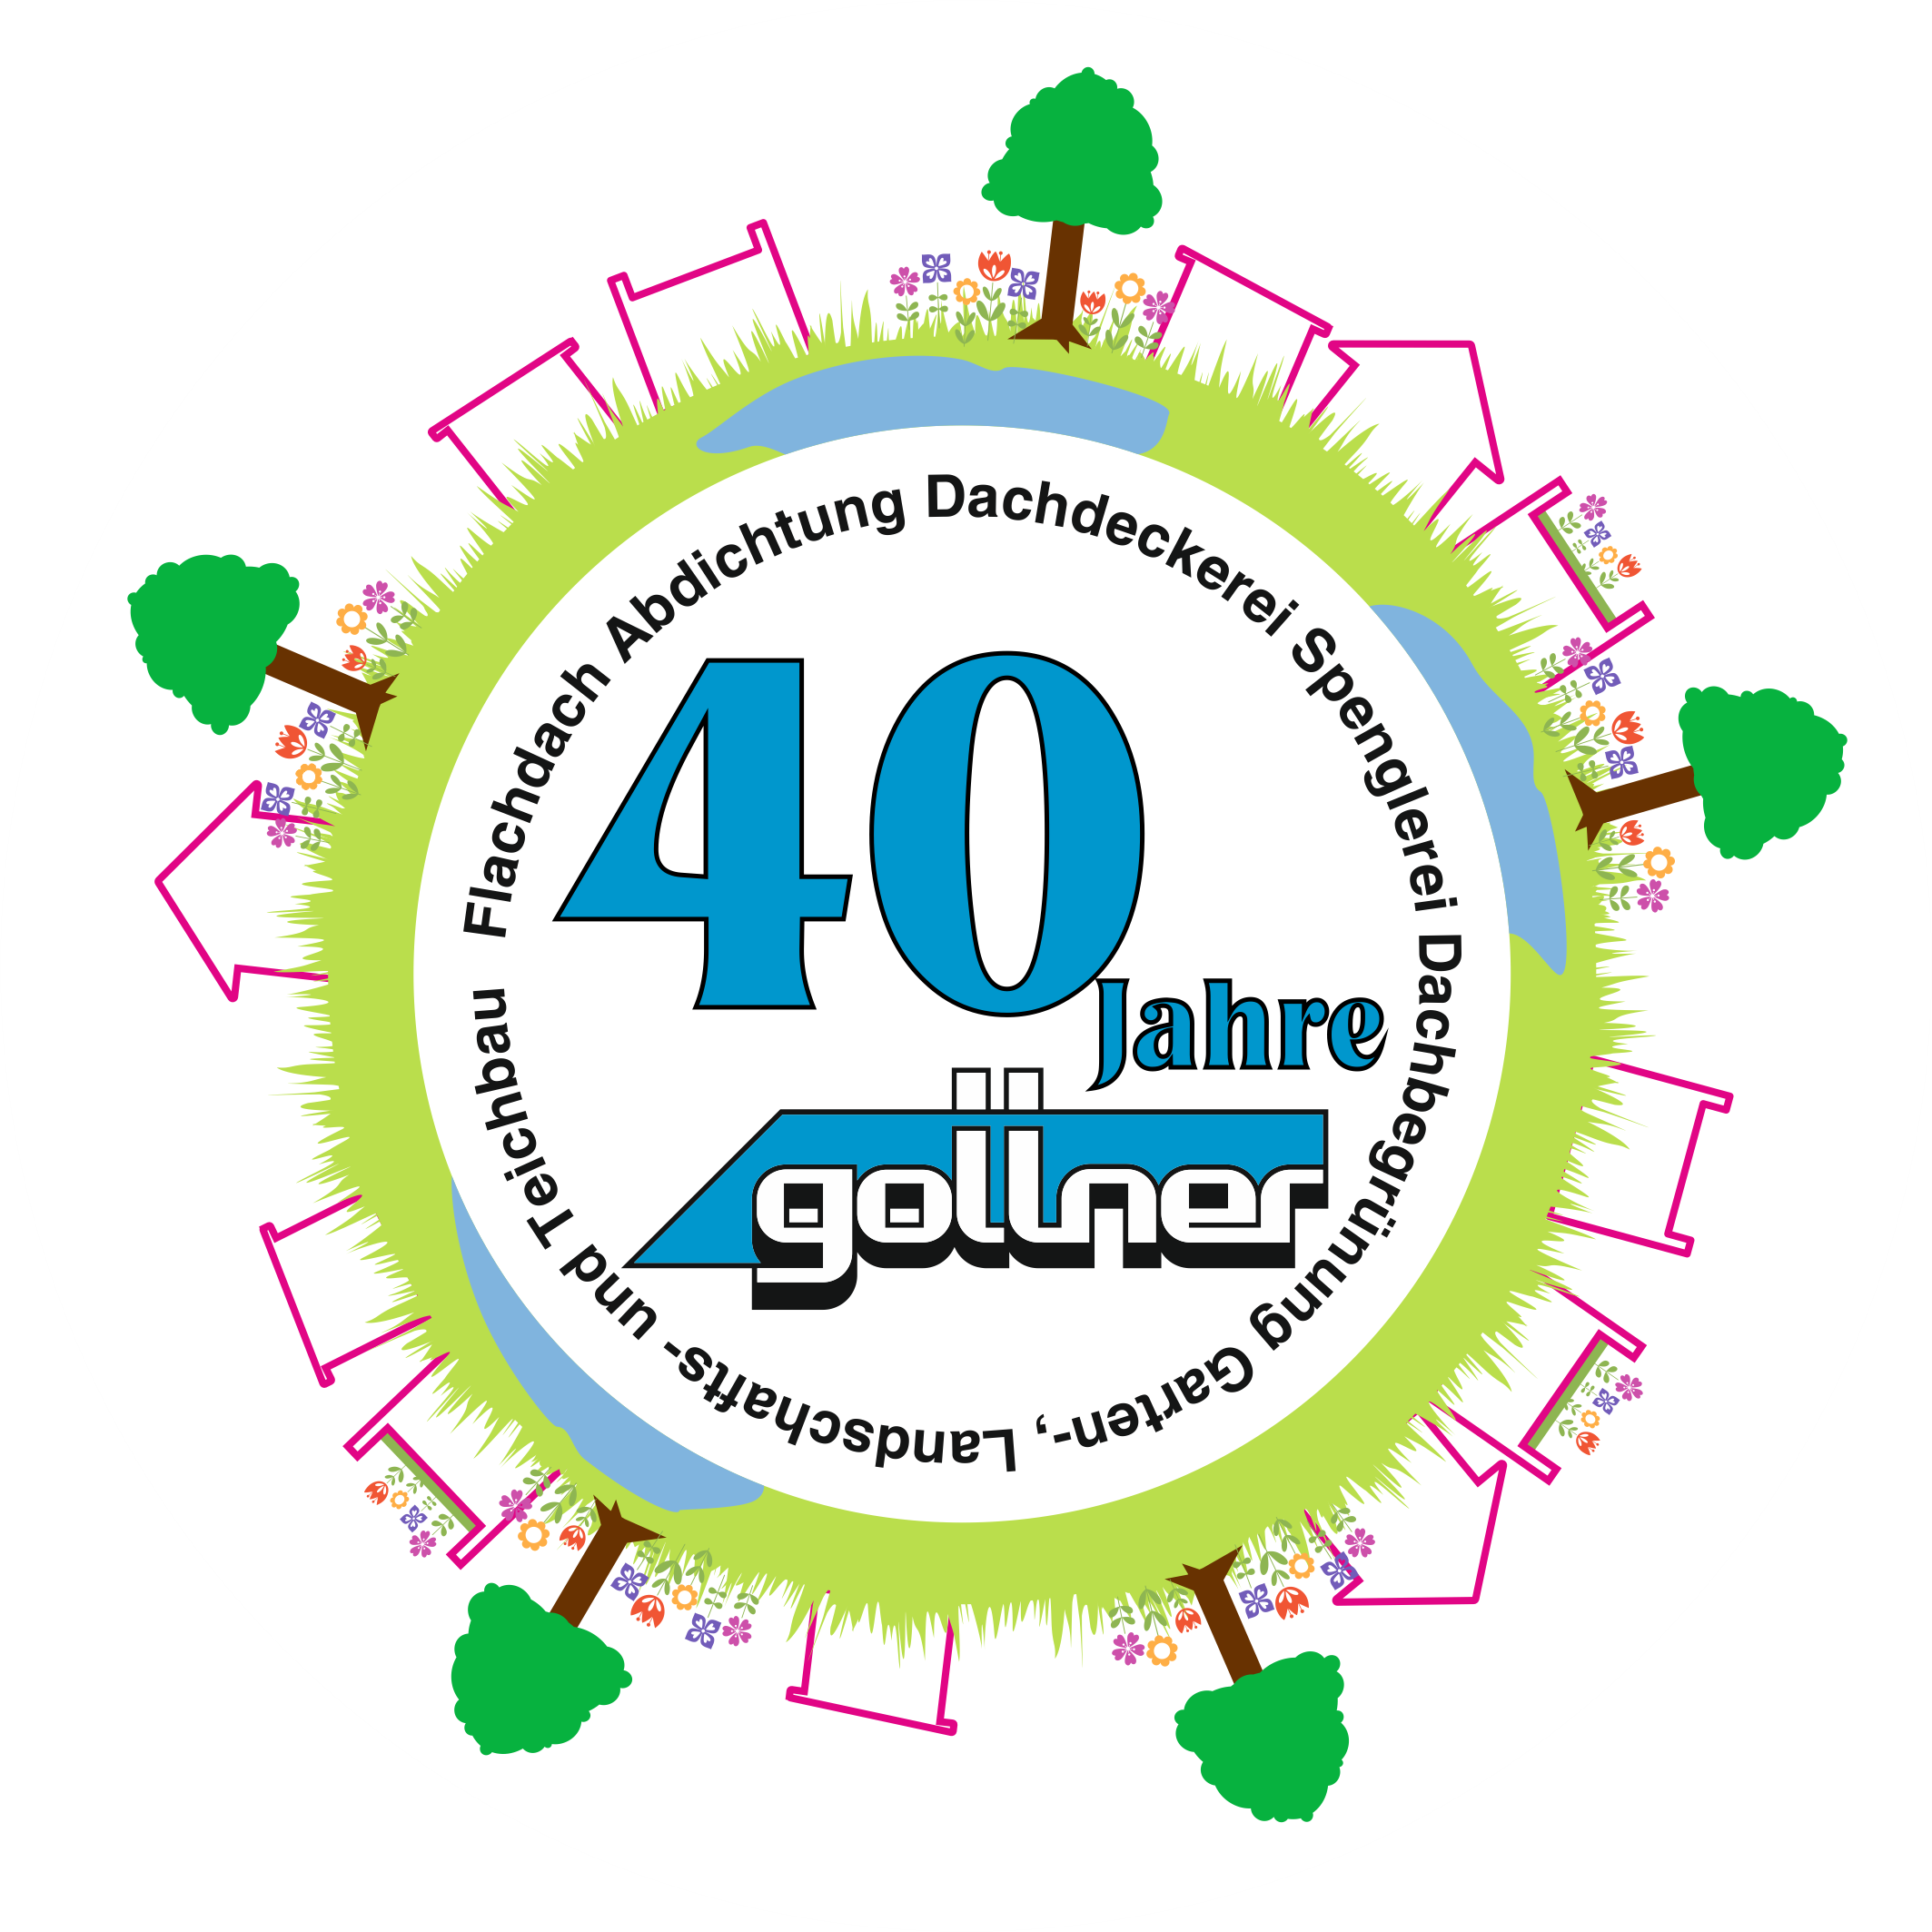 Gollner GmbH - Dachdeckerei, Spenglerei, Garten- und Landschaftsgestalter Abbildung: 40 Jahre-Gollner Sujet